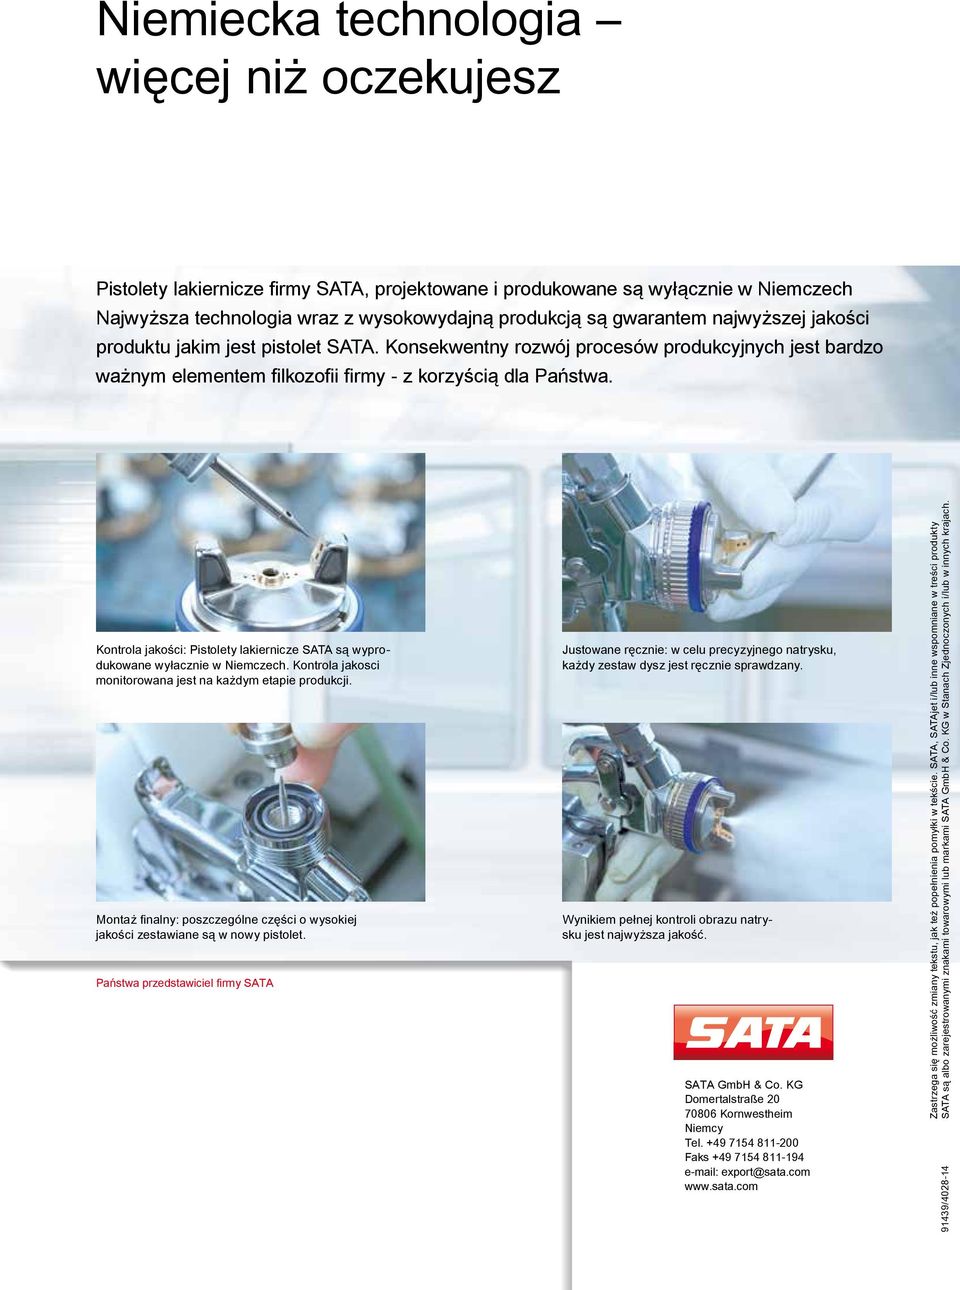 Kontrola jakości: Pistolety lakiernicze SATA są wyprodukowane wyłacznie w Niemczech. Kontrola jakosci monitorowana jest na każdym etapie produkcji.